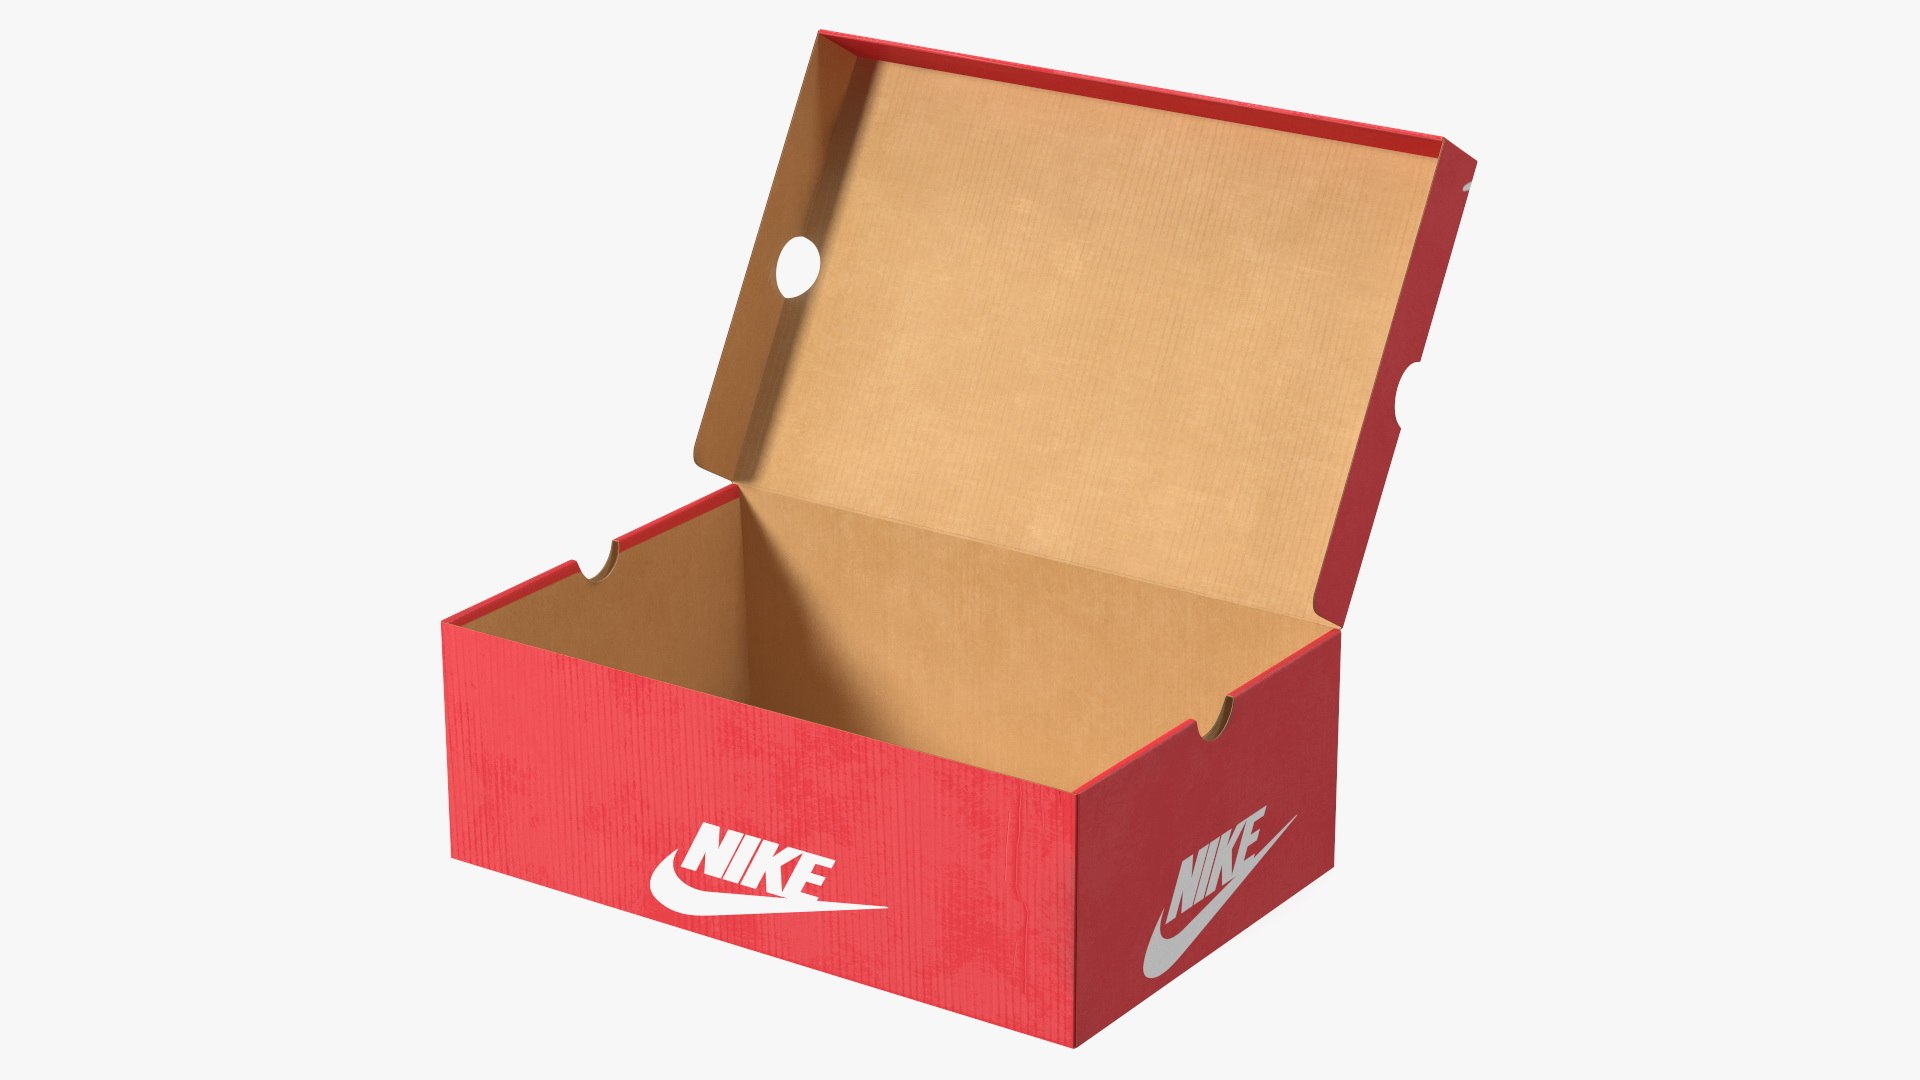 modelo 3d Nike Shoe Box Open - TurboSquid 2011385